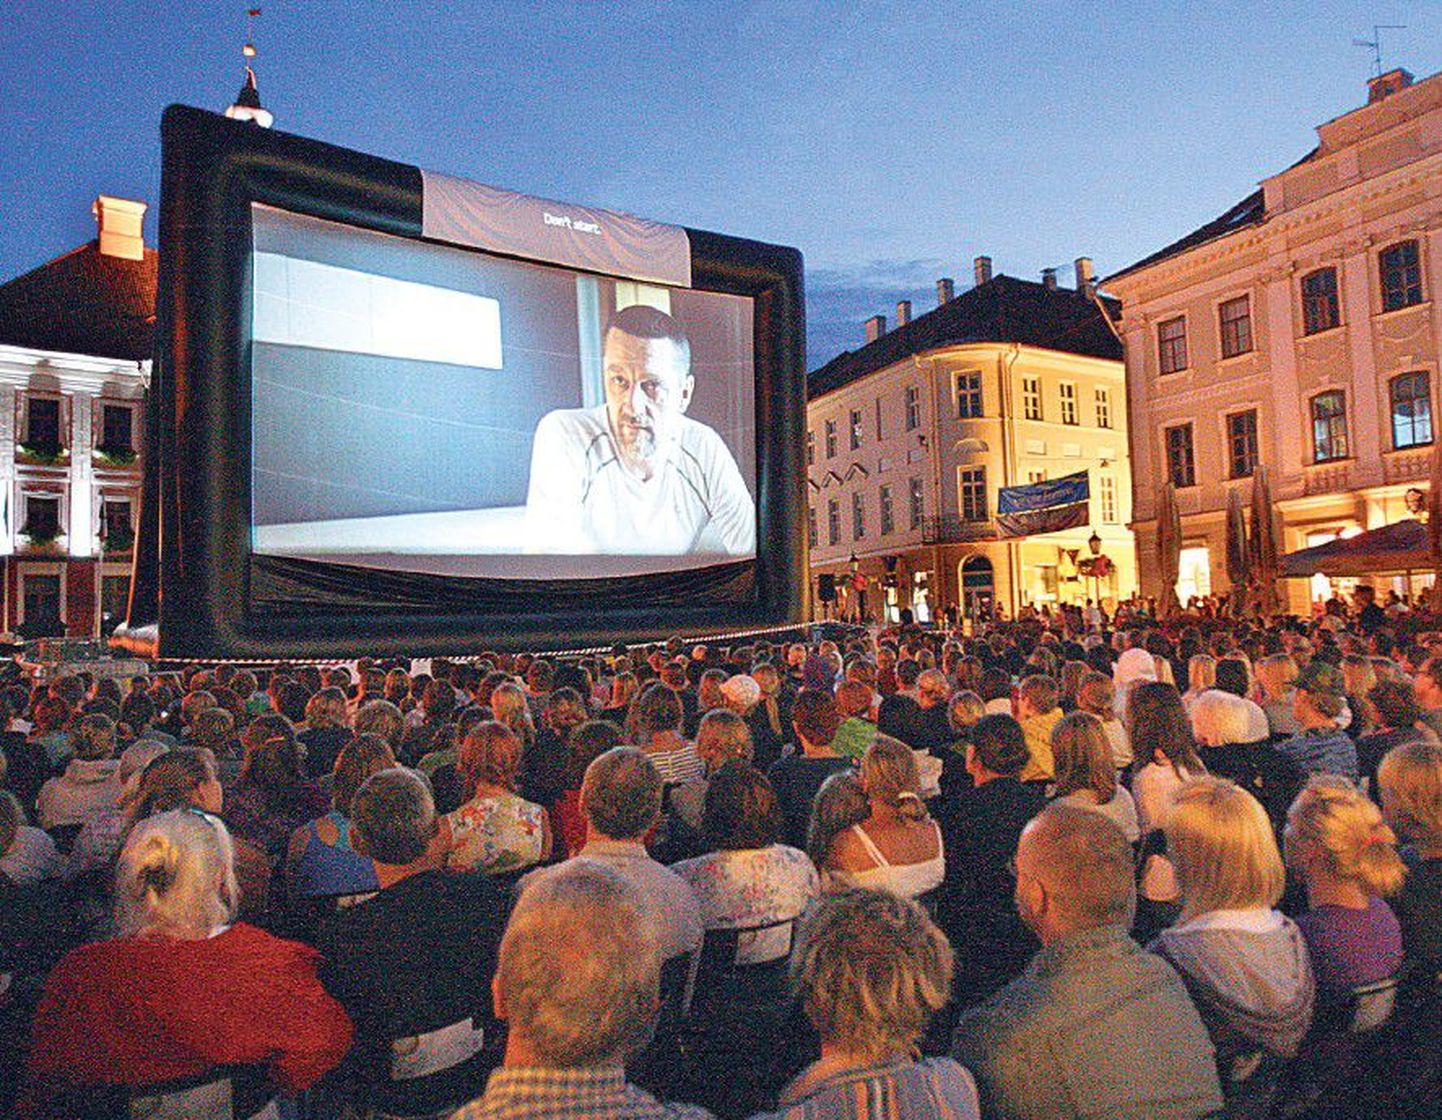 Võimalus vaadata sumedas augustiöös hiiglaslikult kinoekraanilt armastusfilme on igal suvel Tartu raeplatsi rahvast täis toonud.